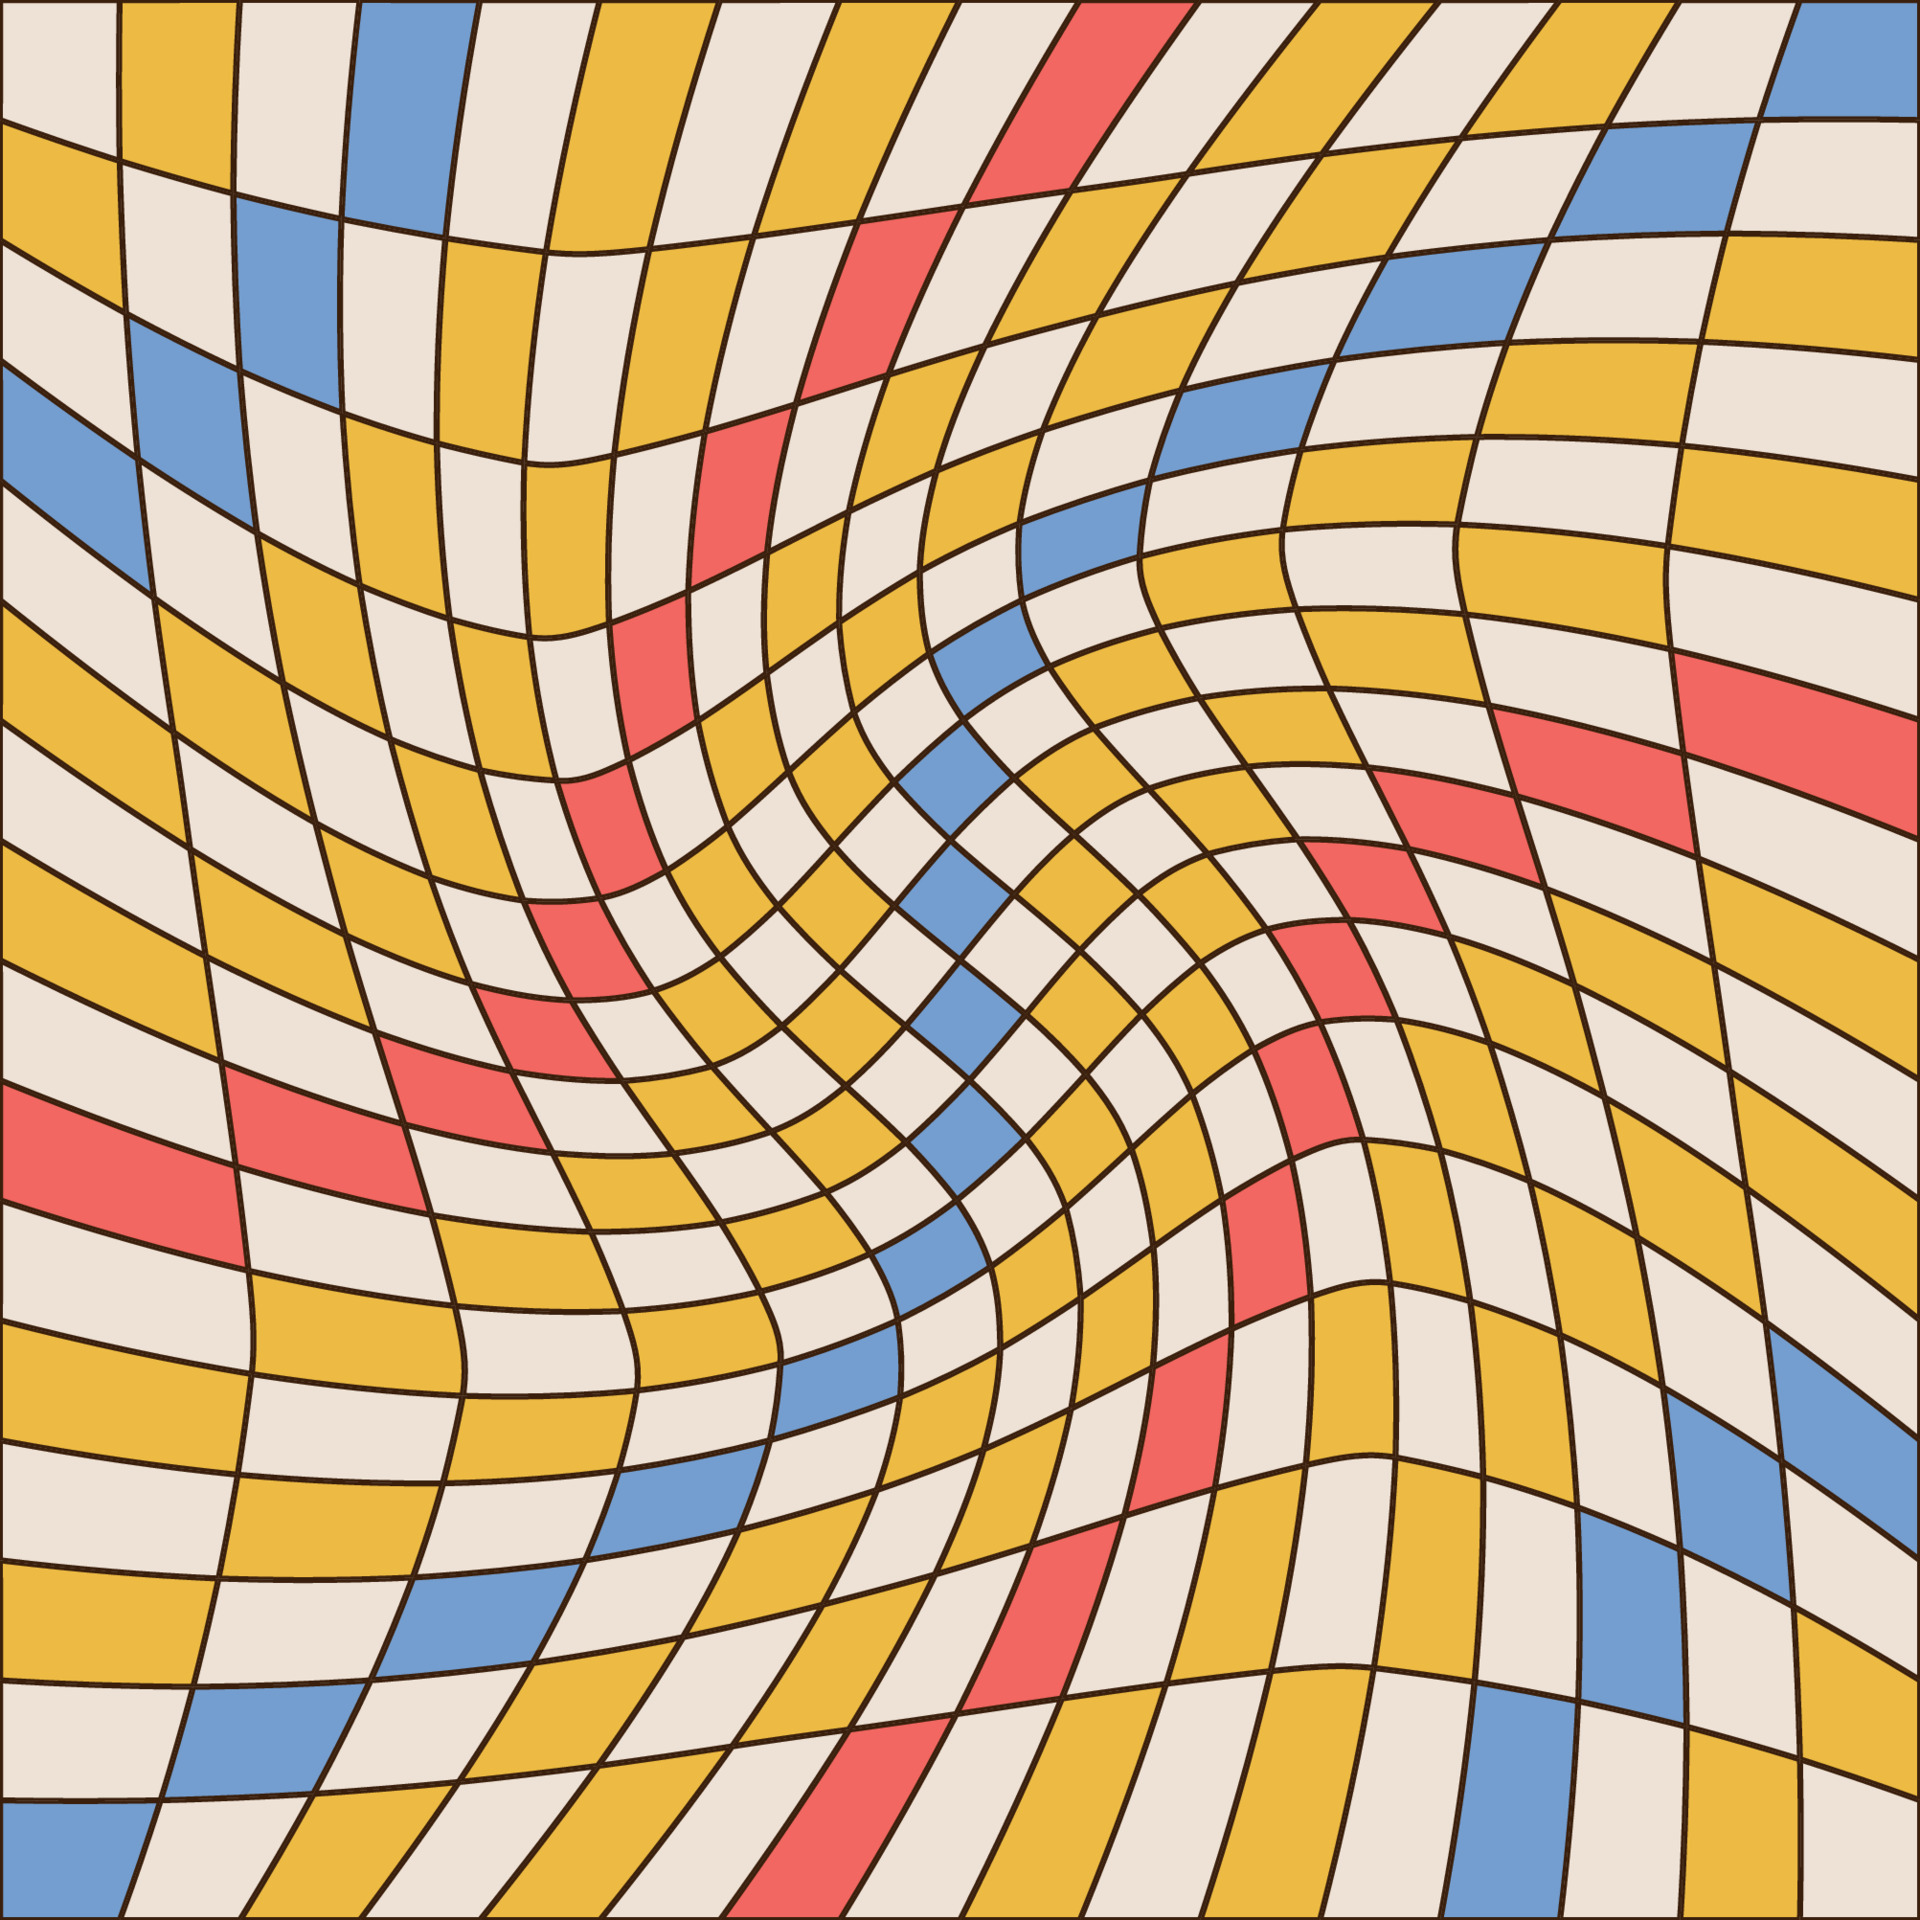 Xadrez colorido ou arte vetorial padrão de tabuleiro quadriculado